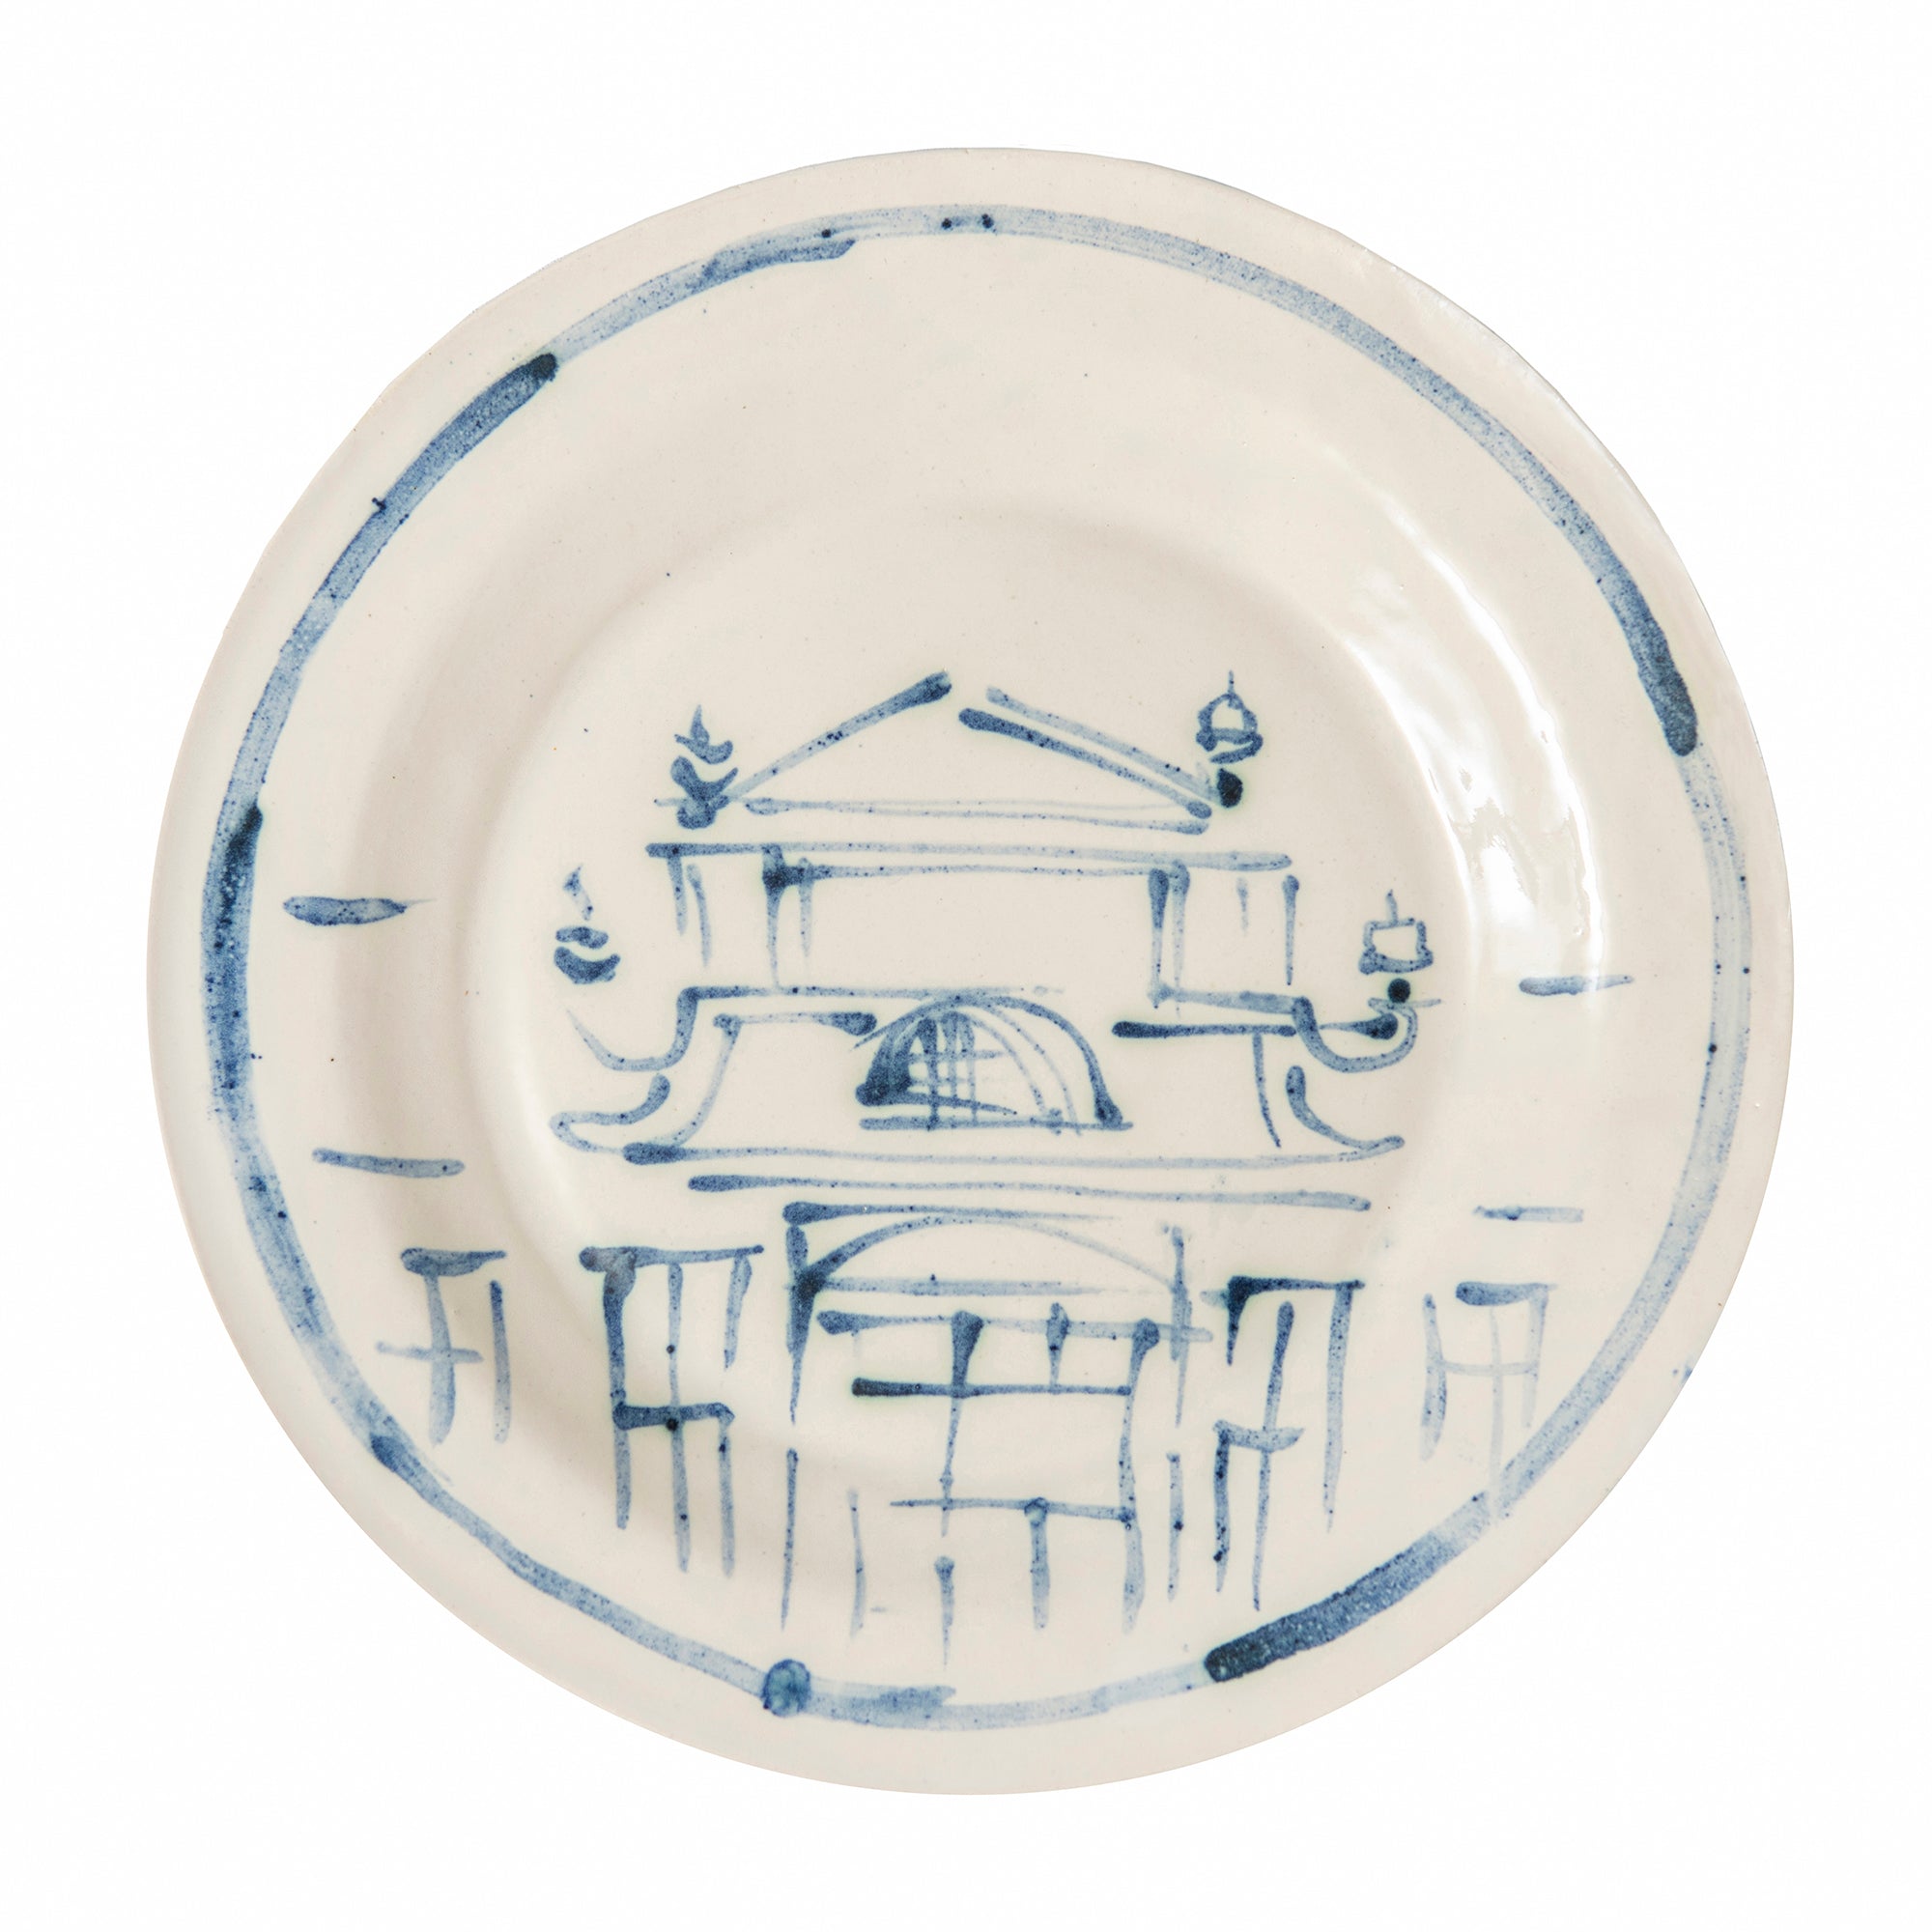 Constantia Ceramic Dinner Plate